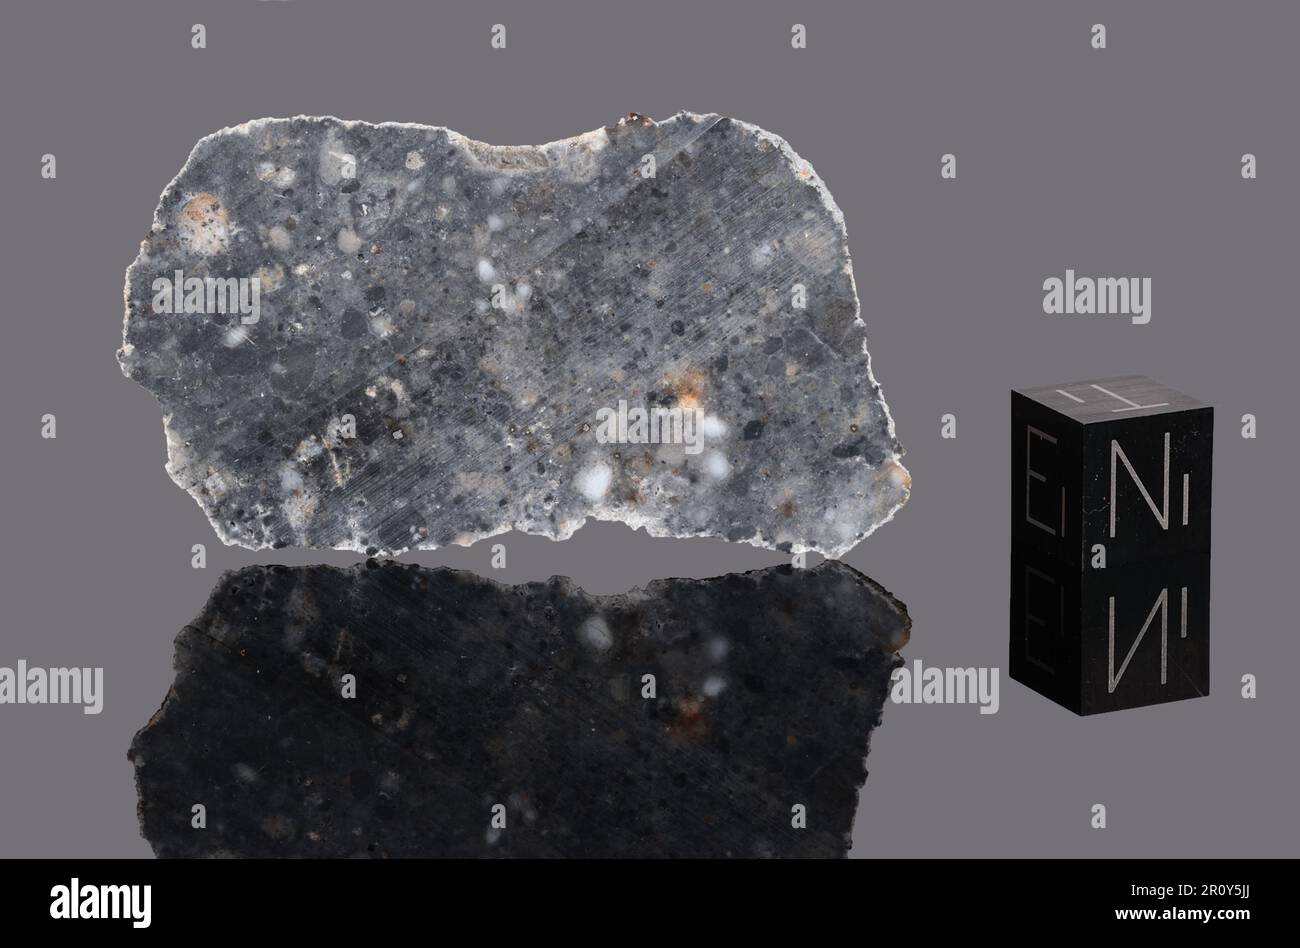 NWA 15018 - Found 2022, Morocco, Africa. Lunar feldsphatic breccia. Total mass 1.2 kg. Slice of lunar meteorite NWA 15018 Stock Photo